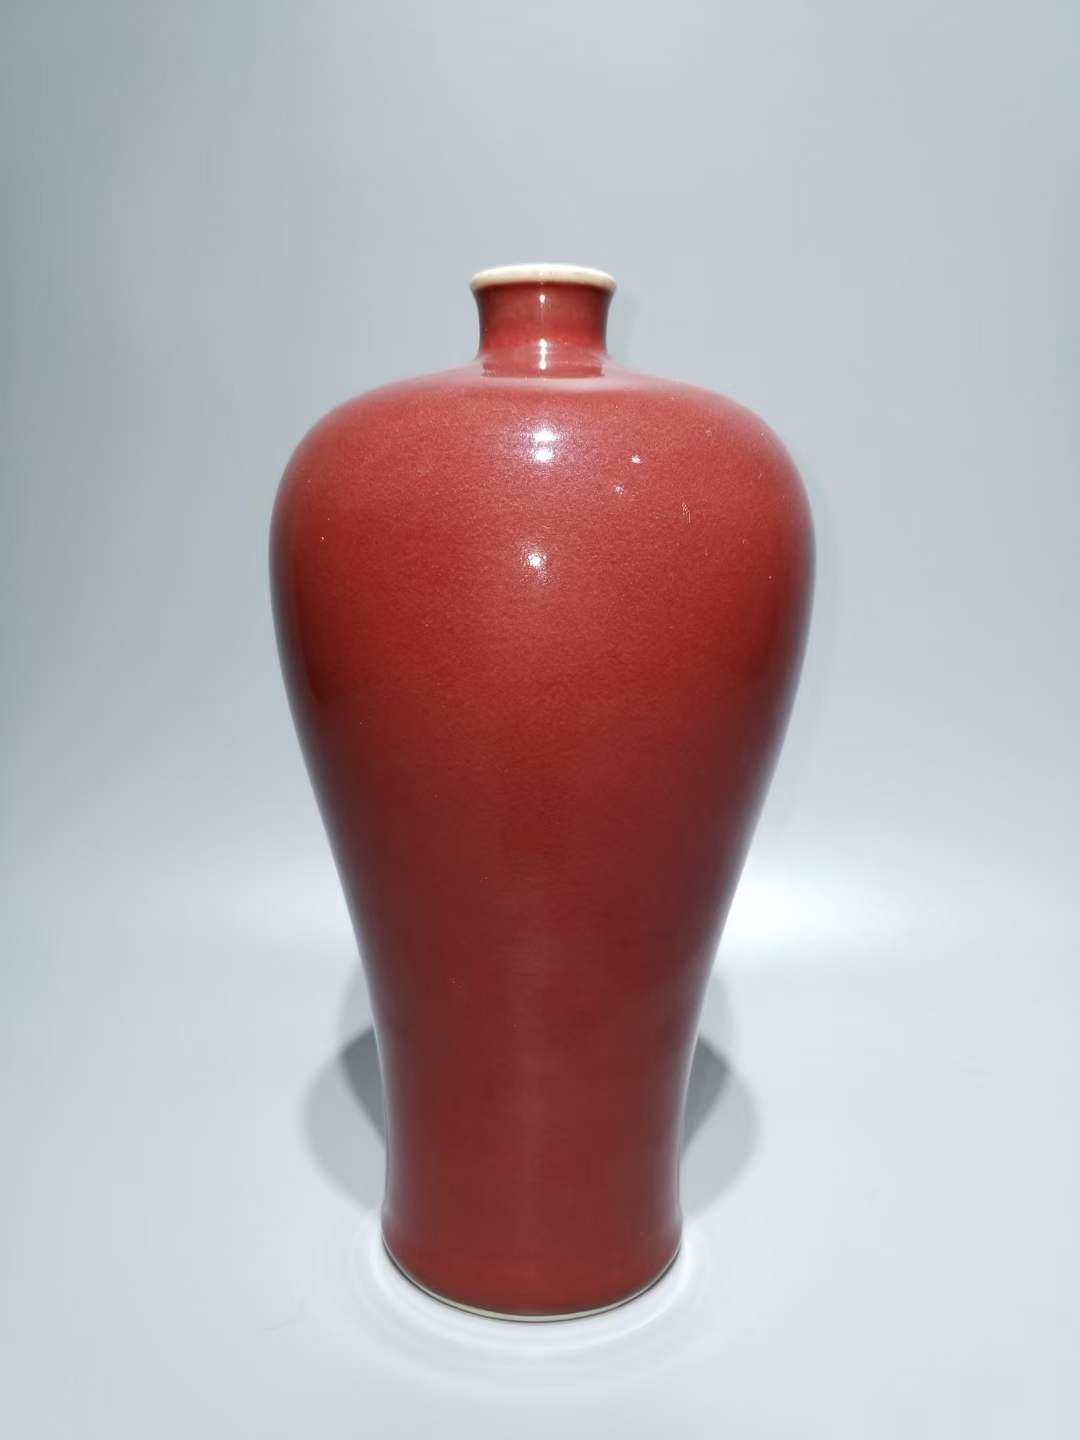 豇豆红釉梅瓶